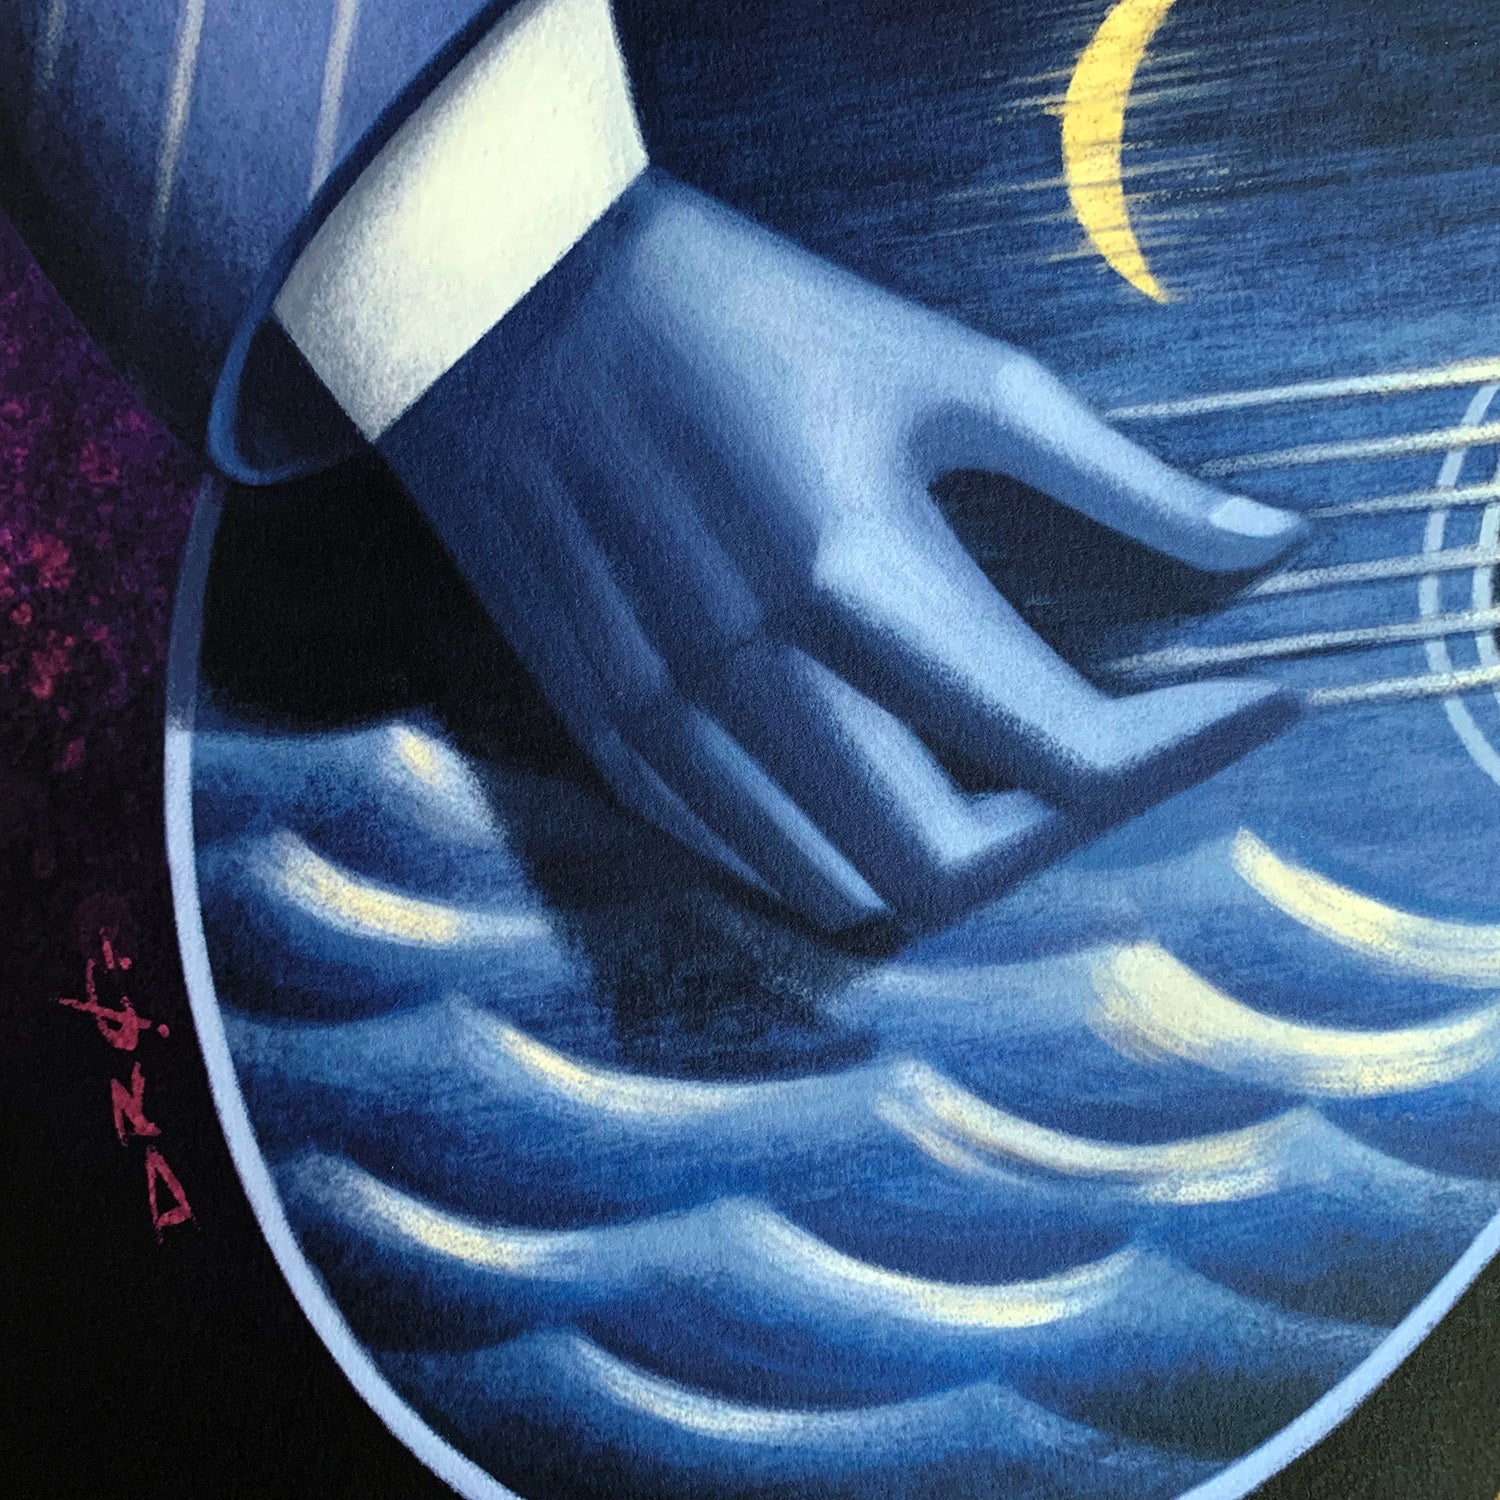 davidderamon-prints-blues-detail6